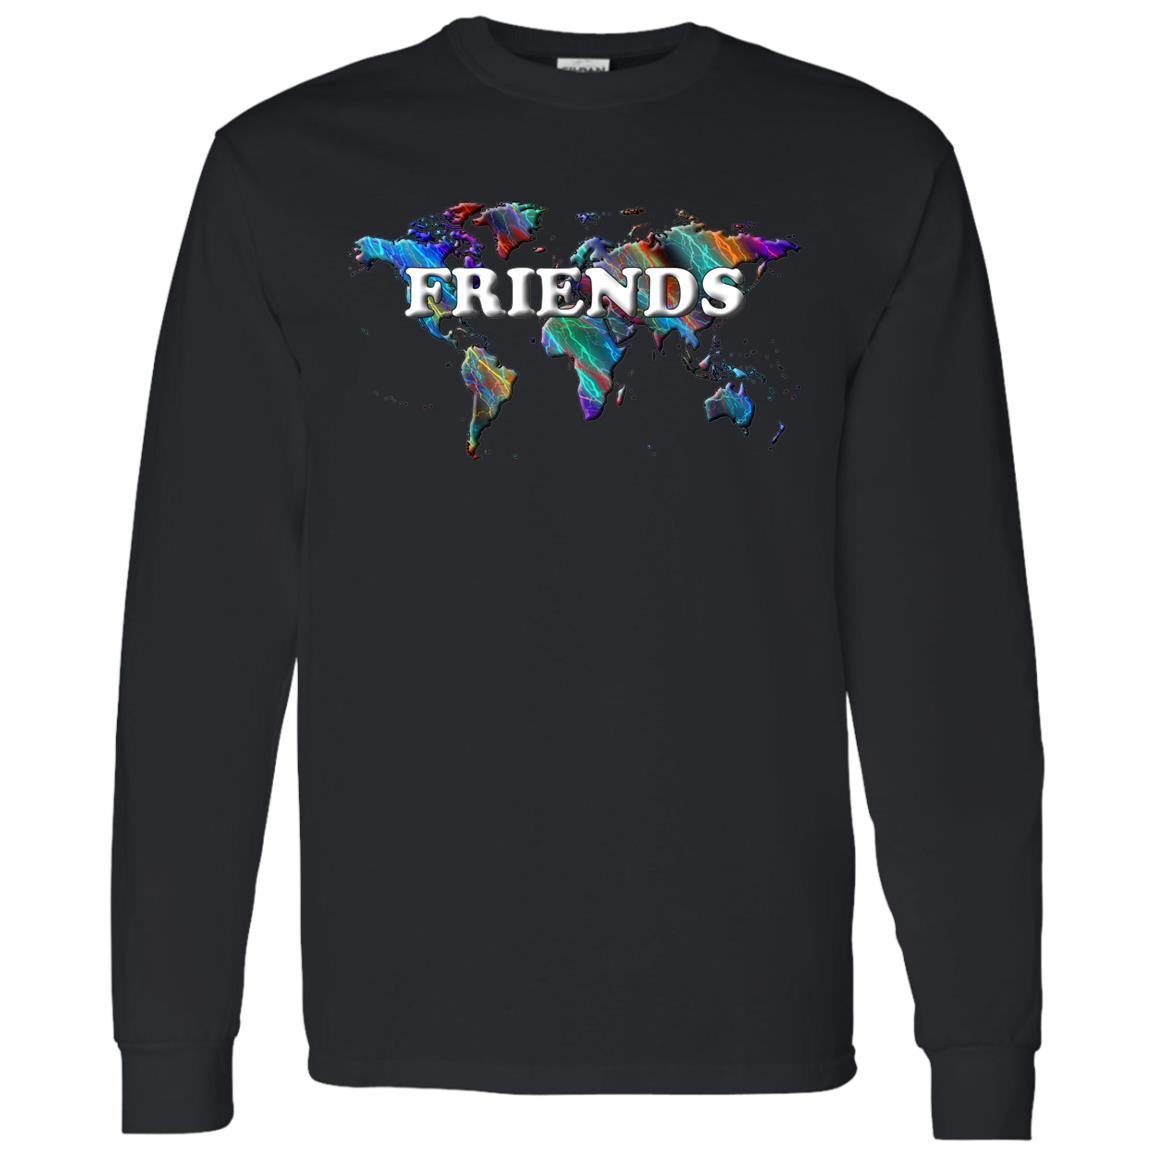 Friends Long Sleeve T-Shirt